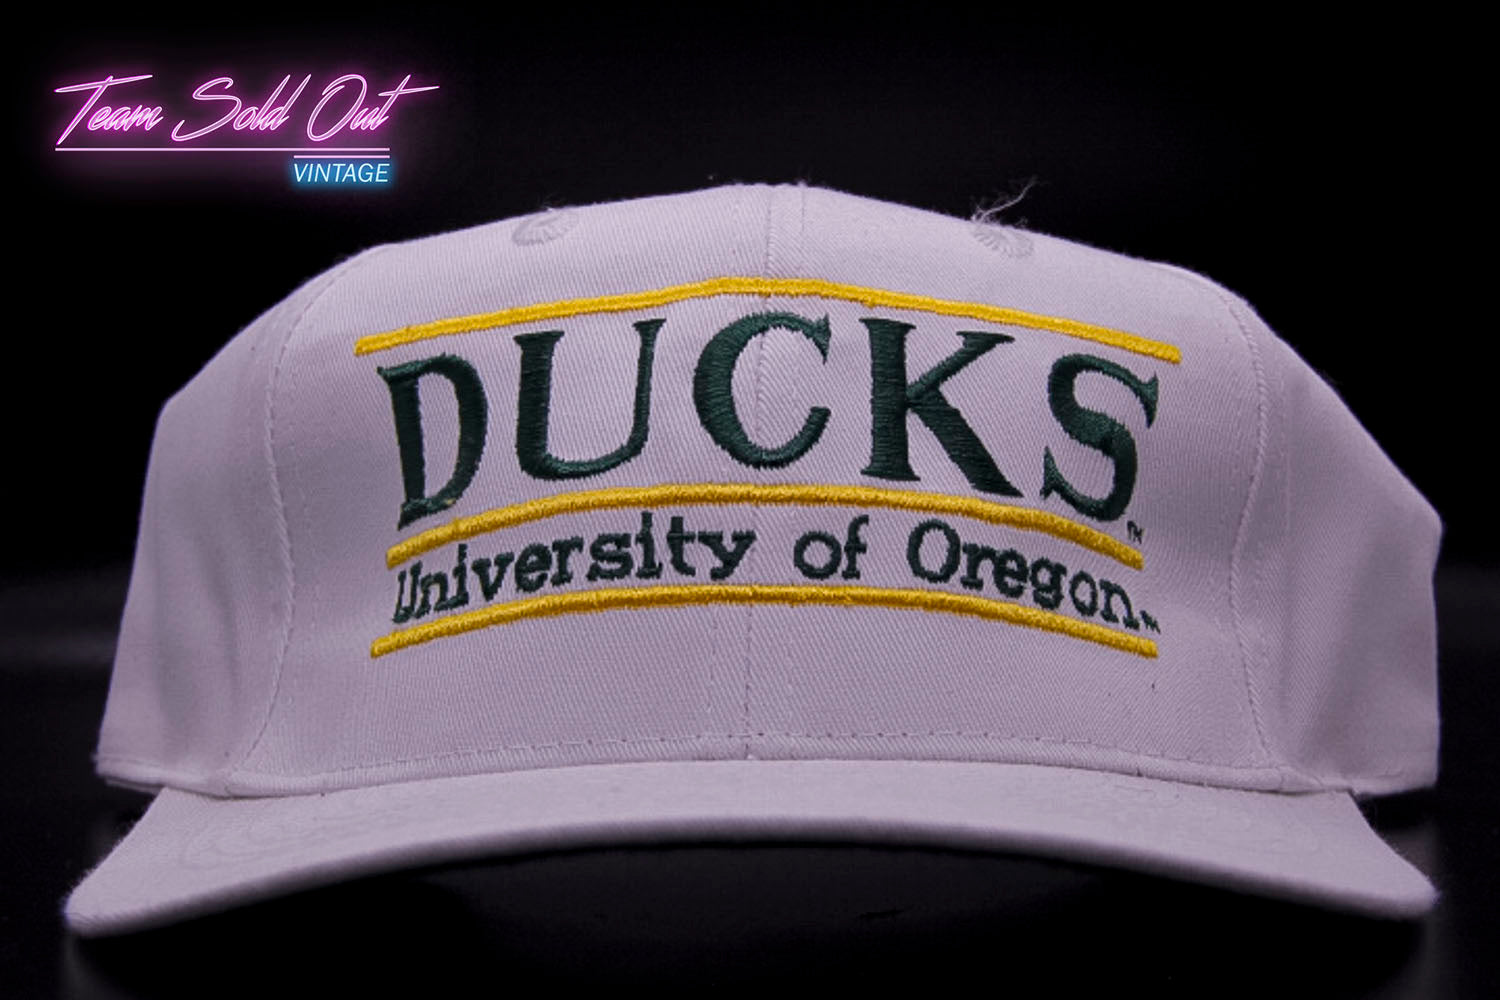 Vintage The Game Split Bar University of Oregon Ducks Snapback Hat NCA –  Team Sold Out Vintage